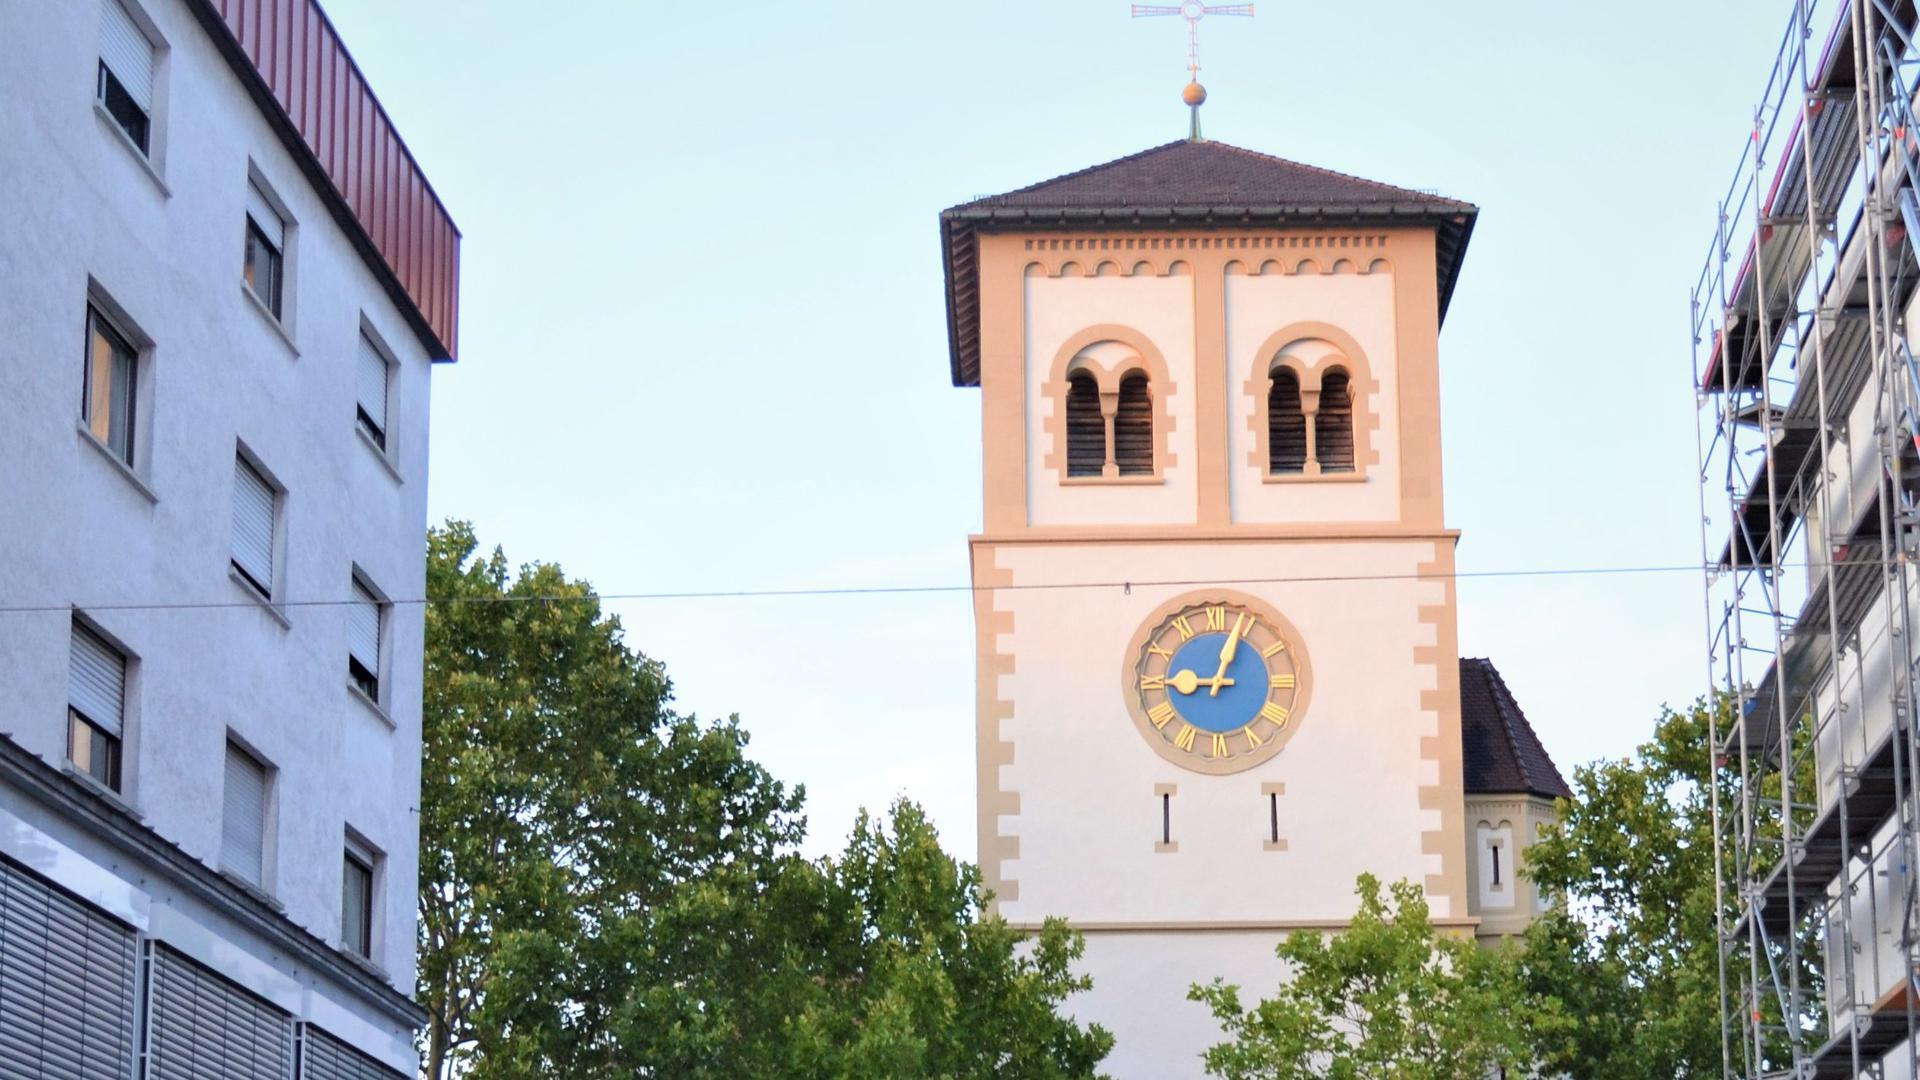 Künftiger Standort: Die Kirche St. Josef in Gaggenau hat große Chancen, trotz Veränderungen Sitz der Pfarrei zu werden.